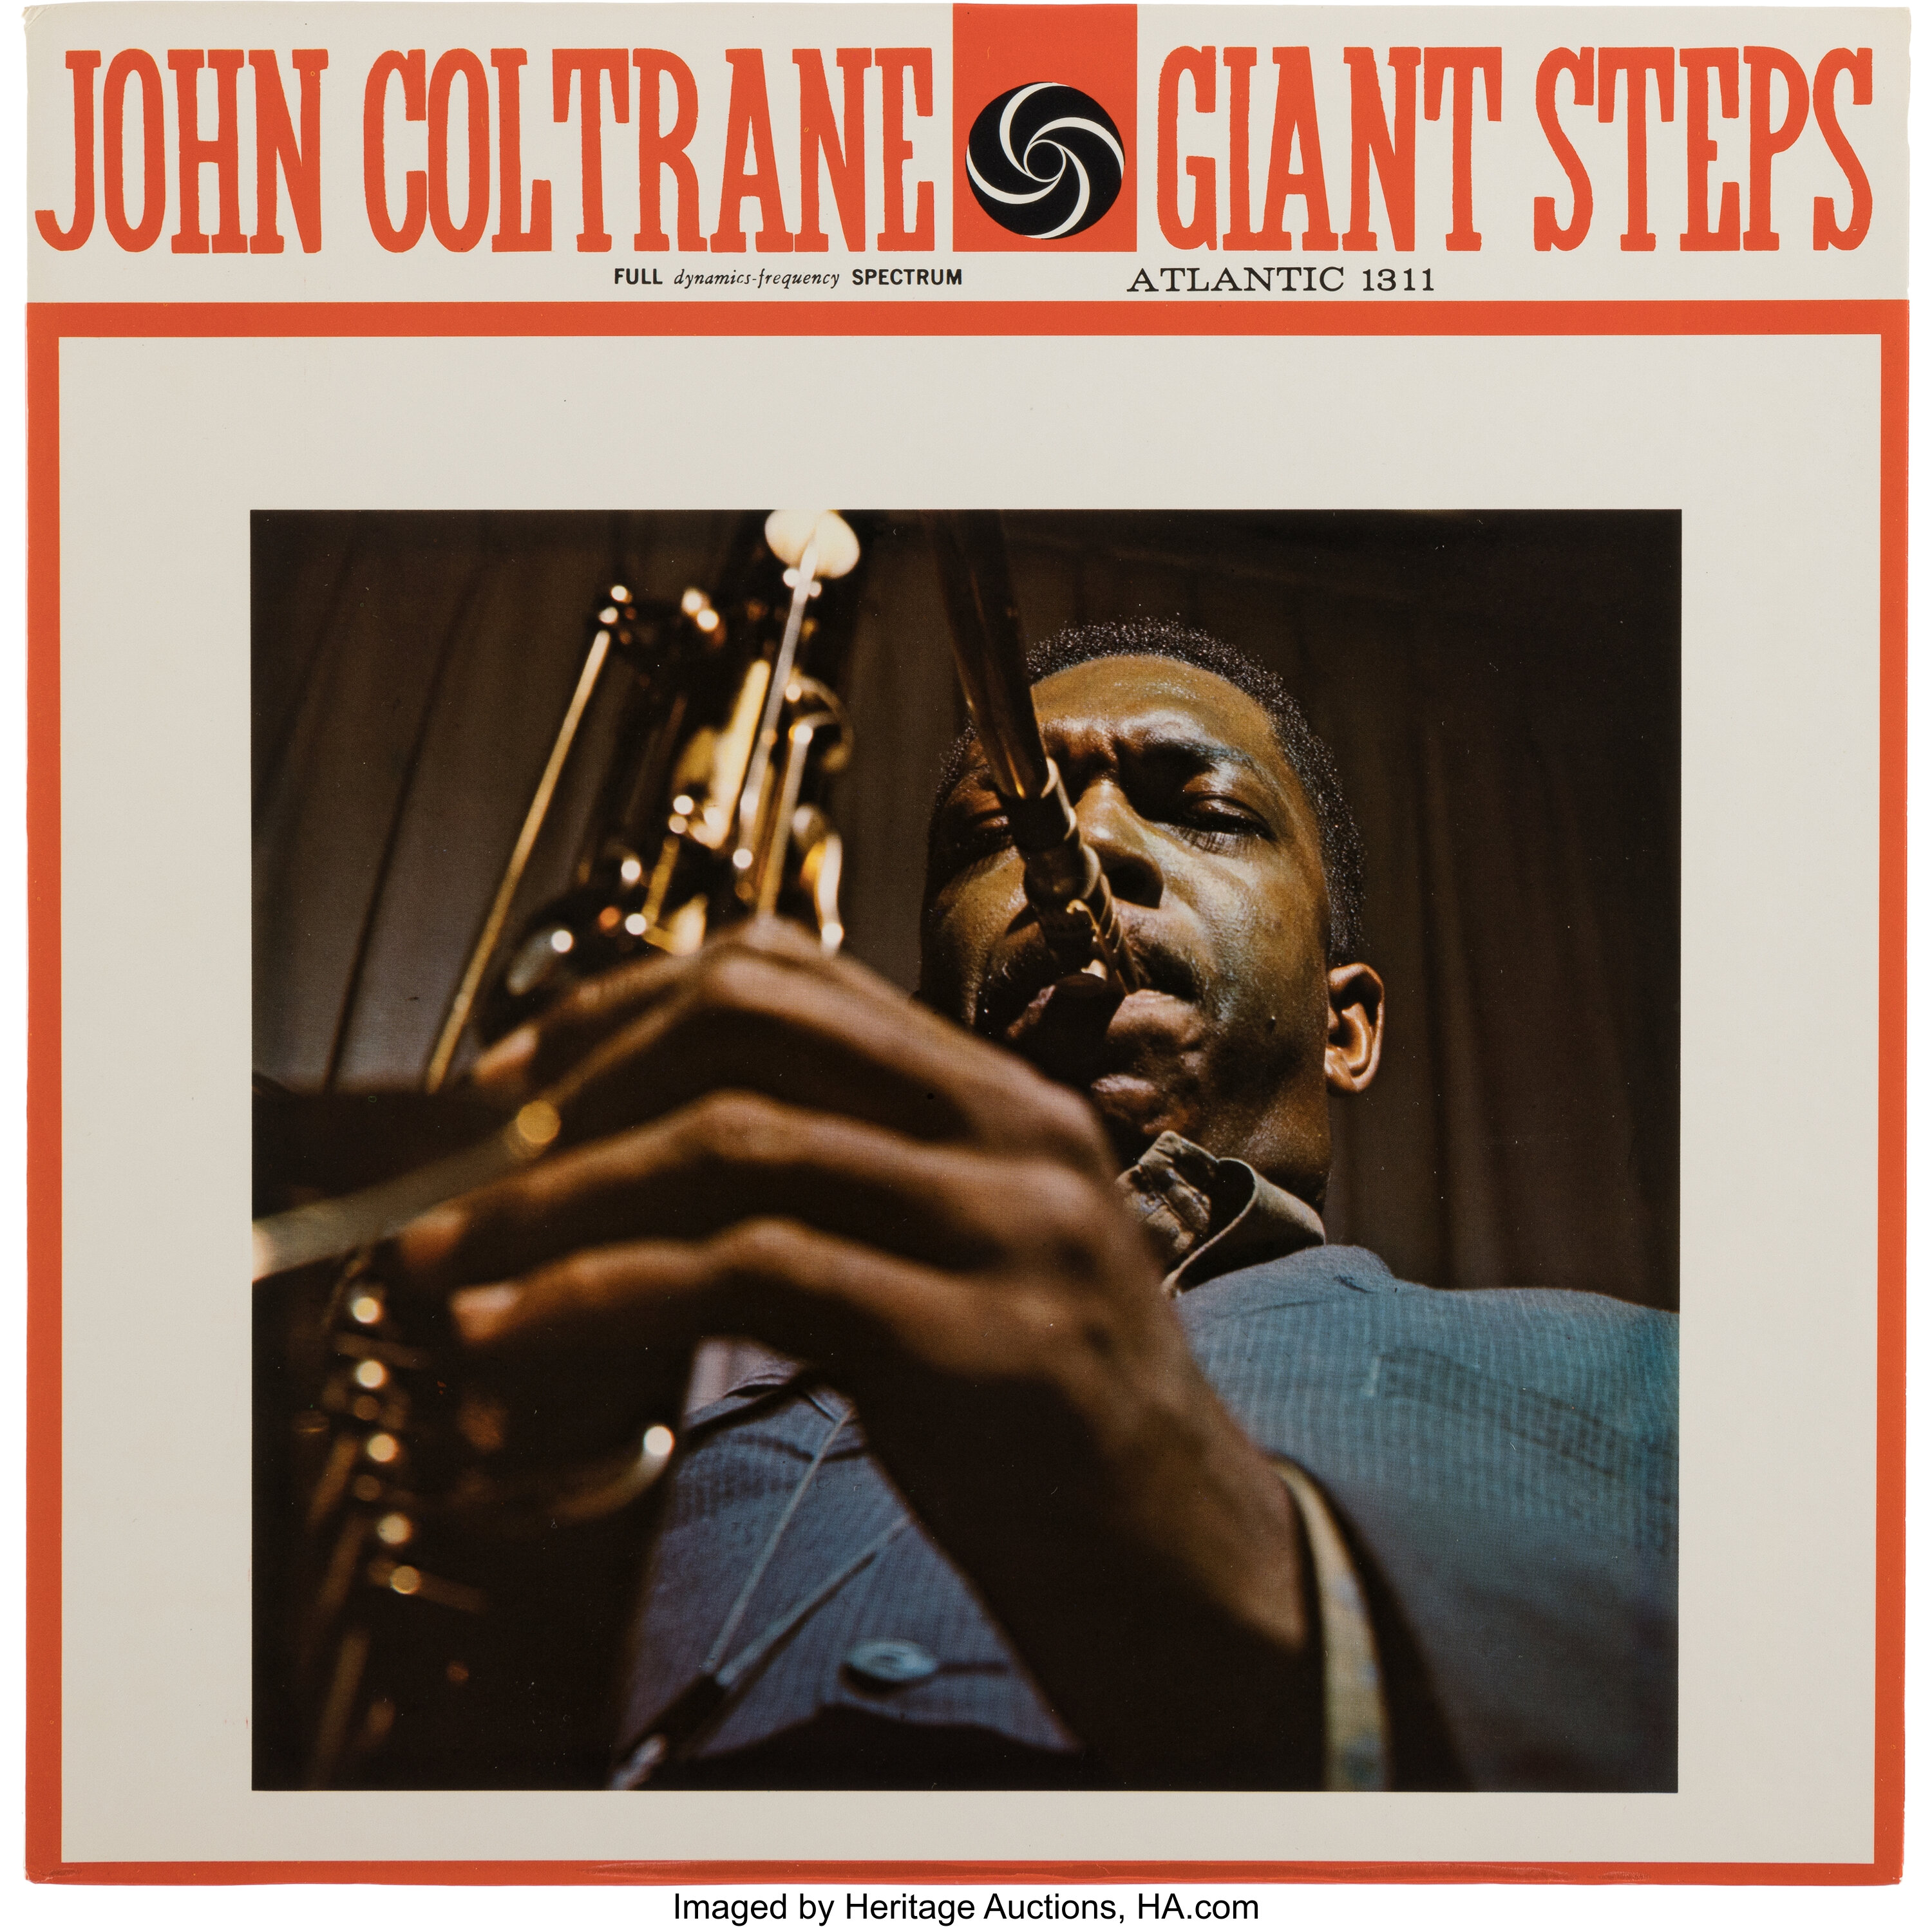 Coltrane_Giant_Steps.jpg